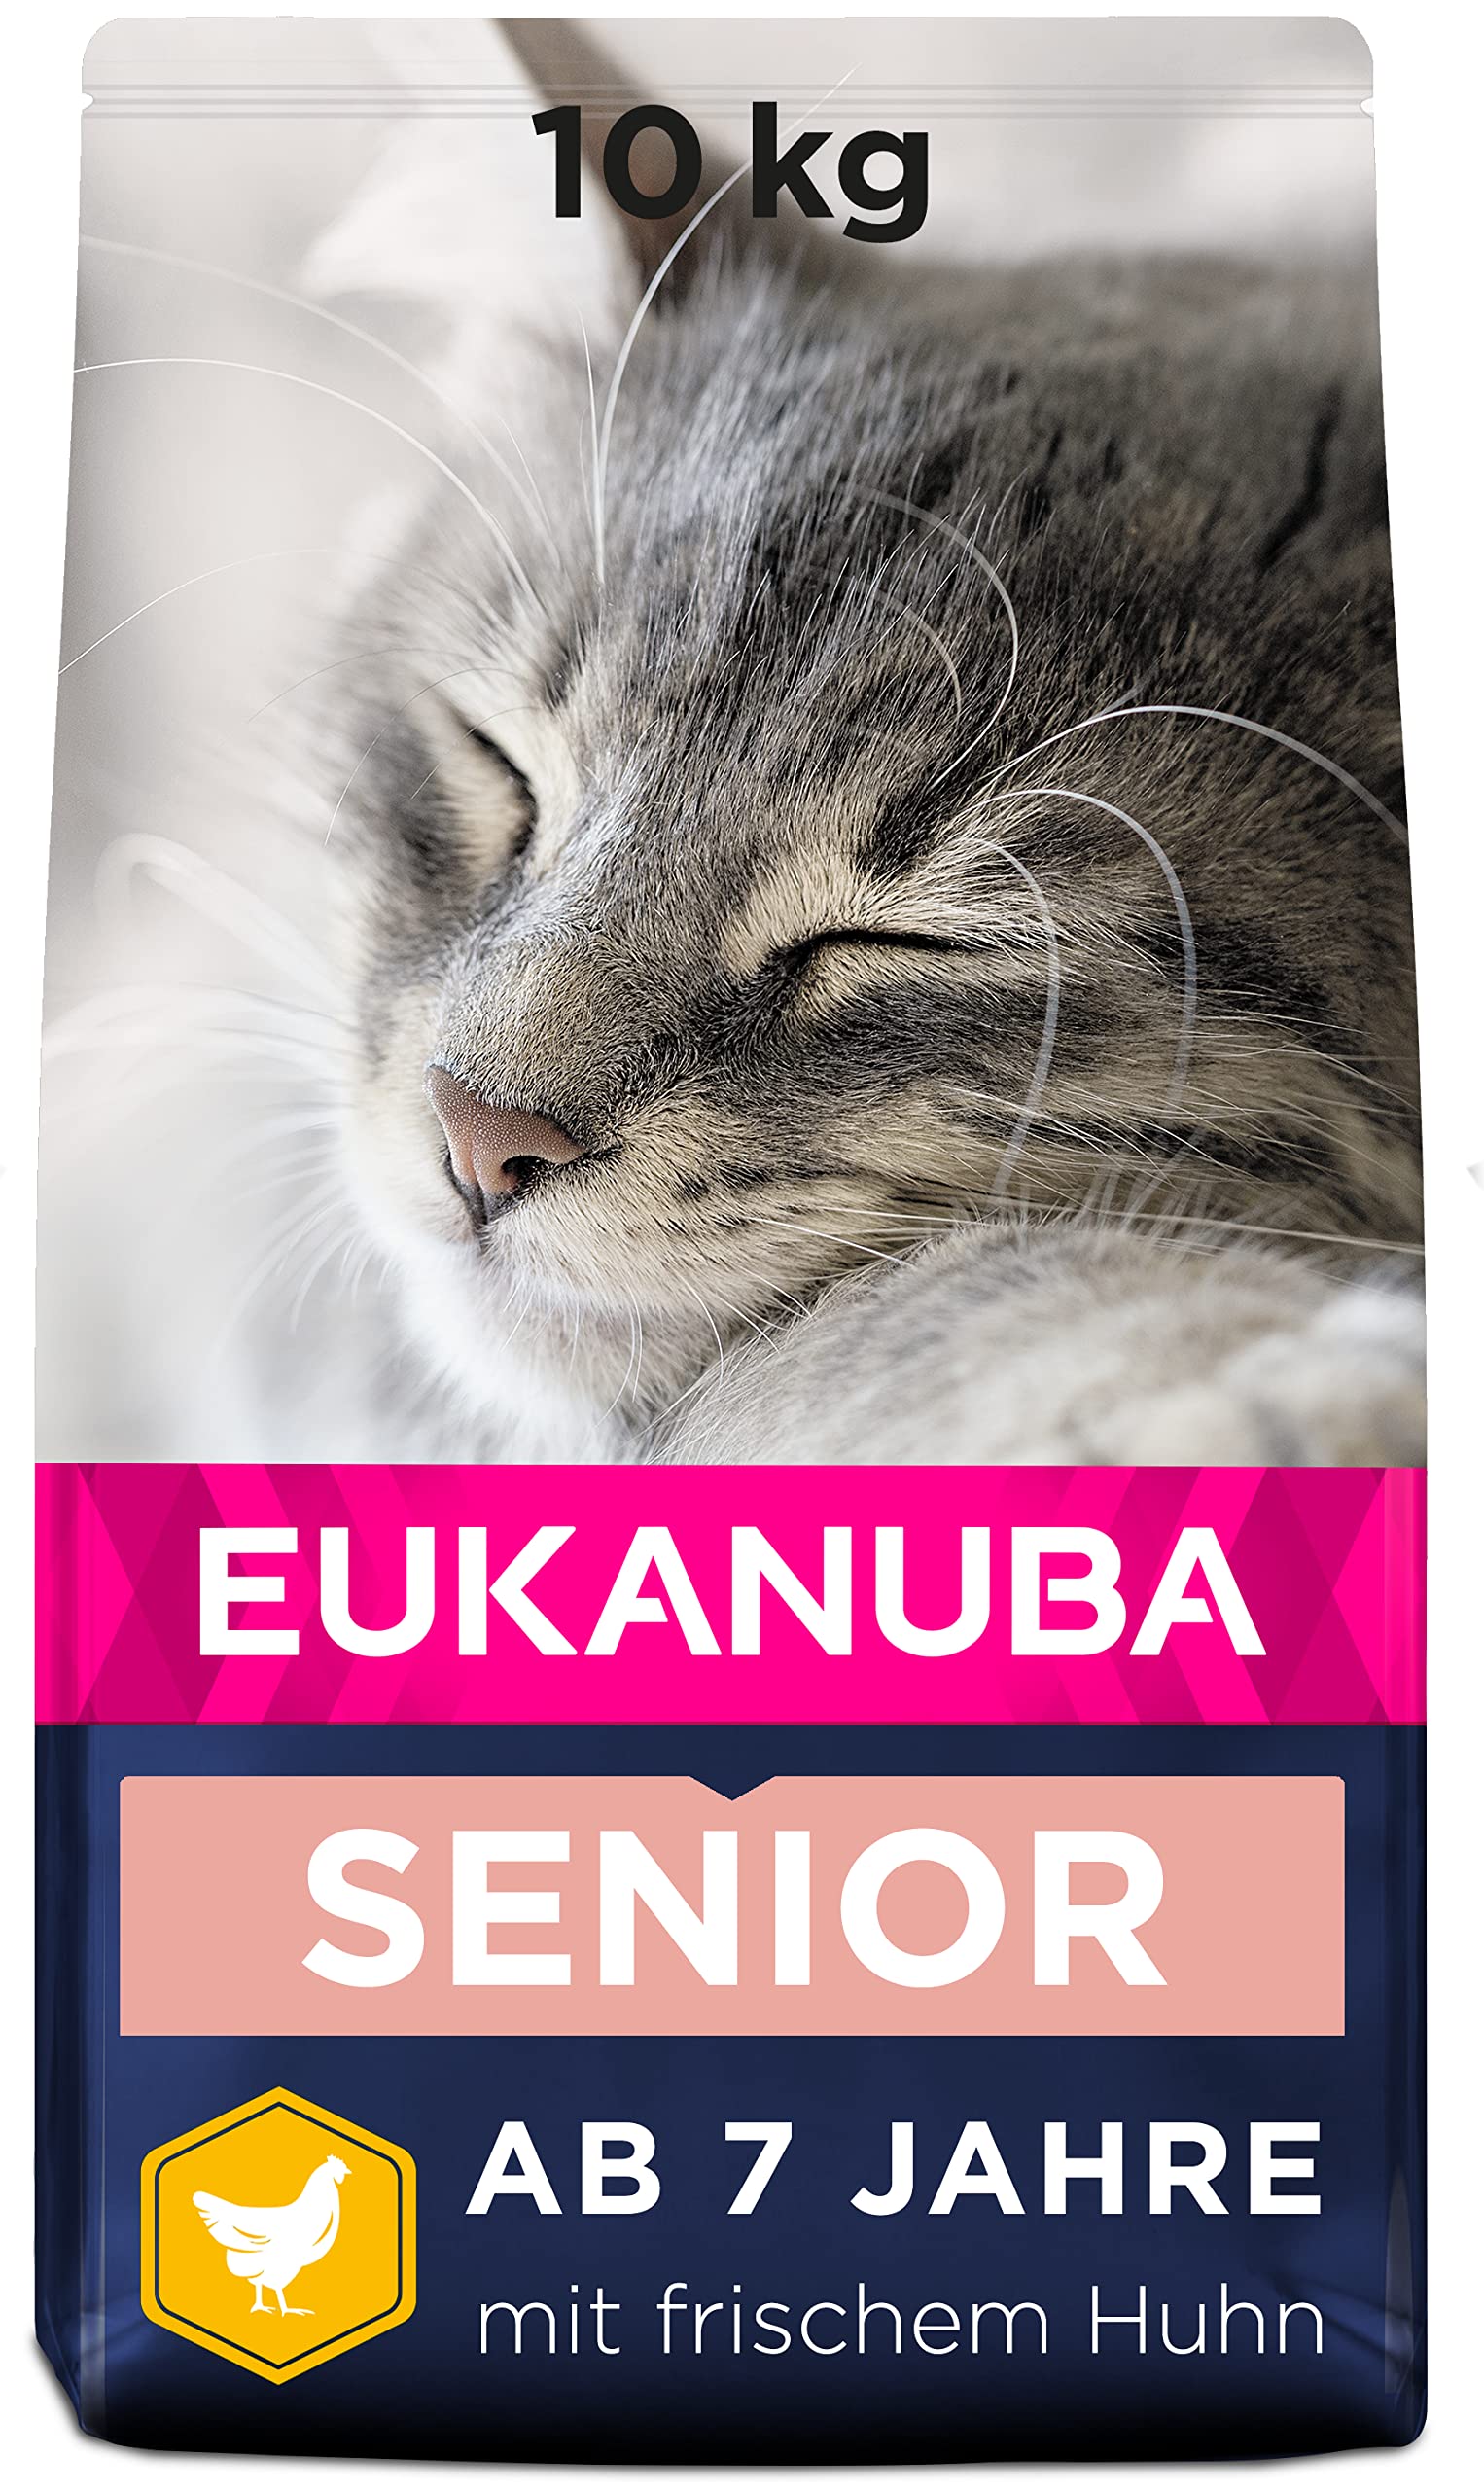 Eukanuba Senior Katzenfutter trocken - Premium Trockenfutter speziell auf die Bedürfnisse älterer Katzen ab 7 Jahre abgestimmt, 10 kg